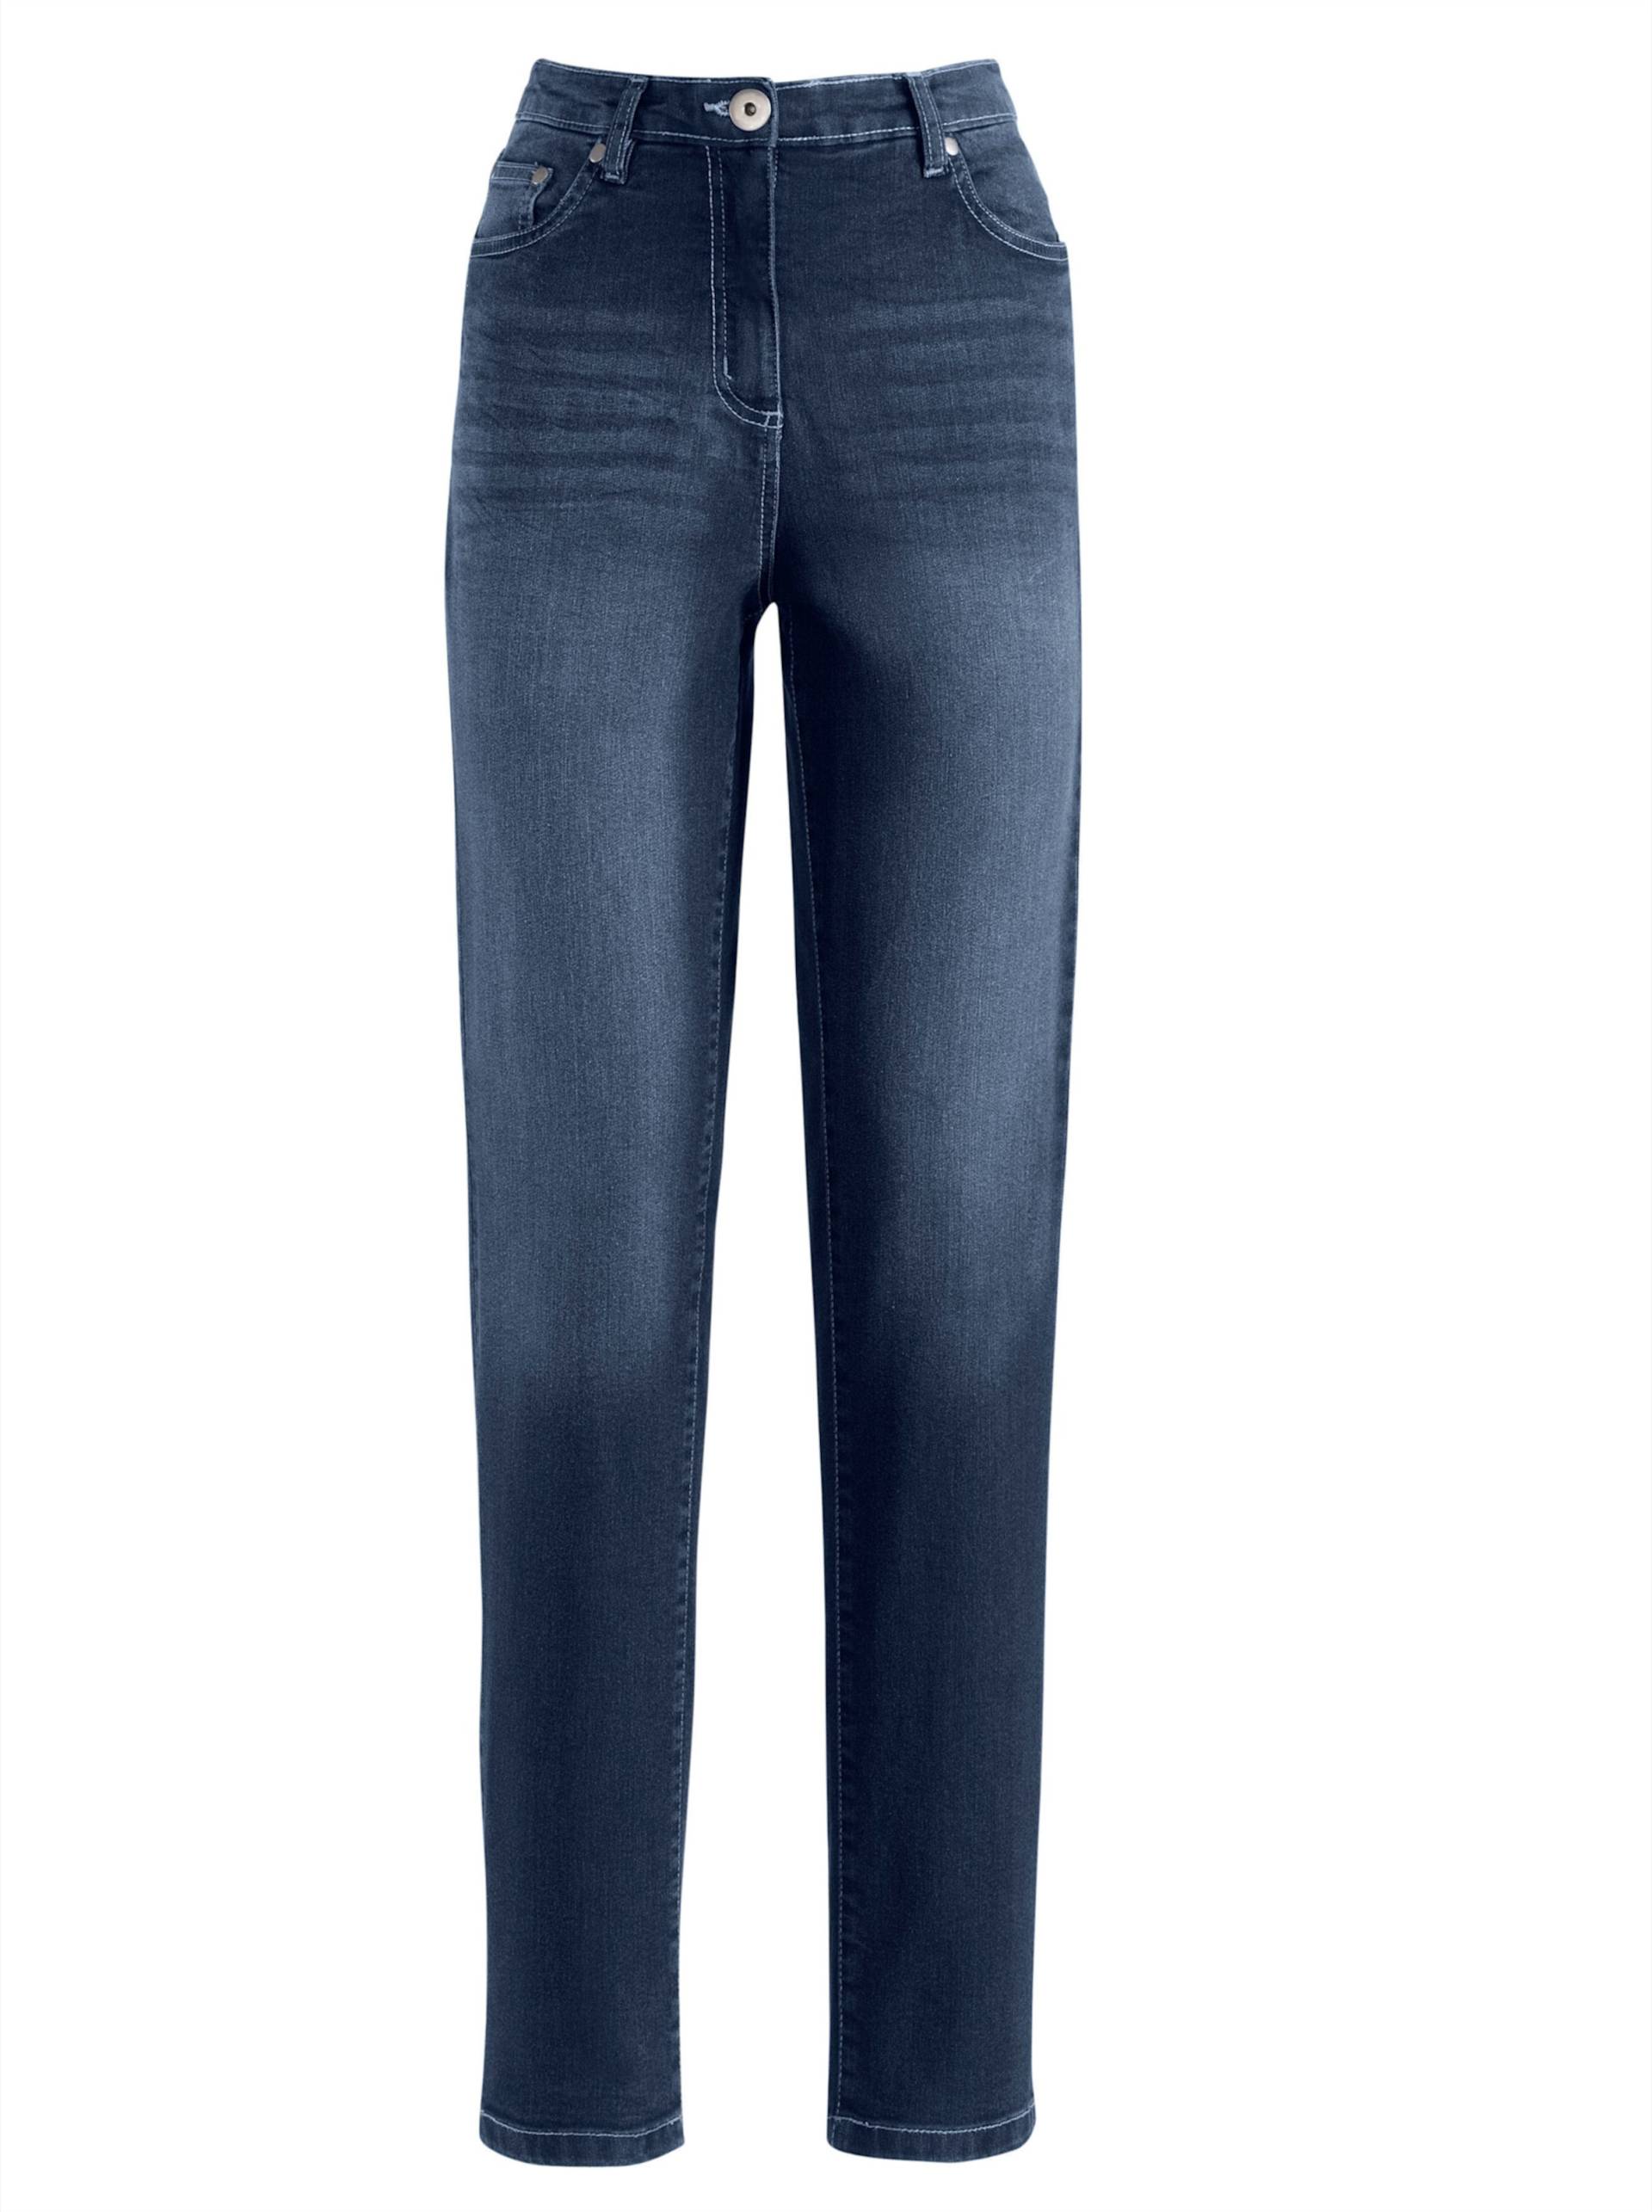 Jeans in dark blue von heine